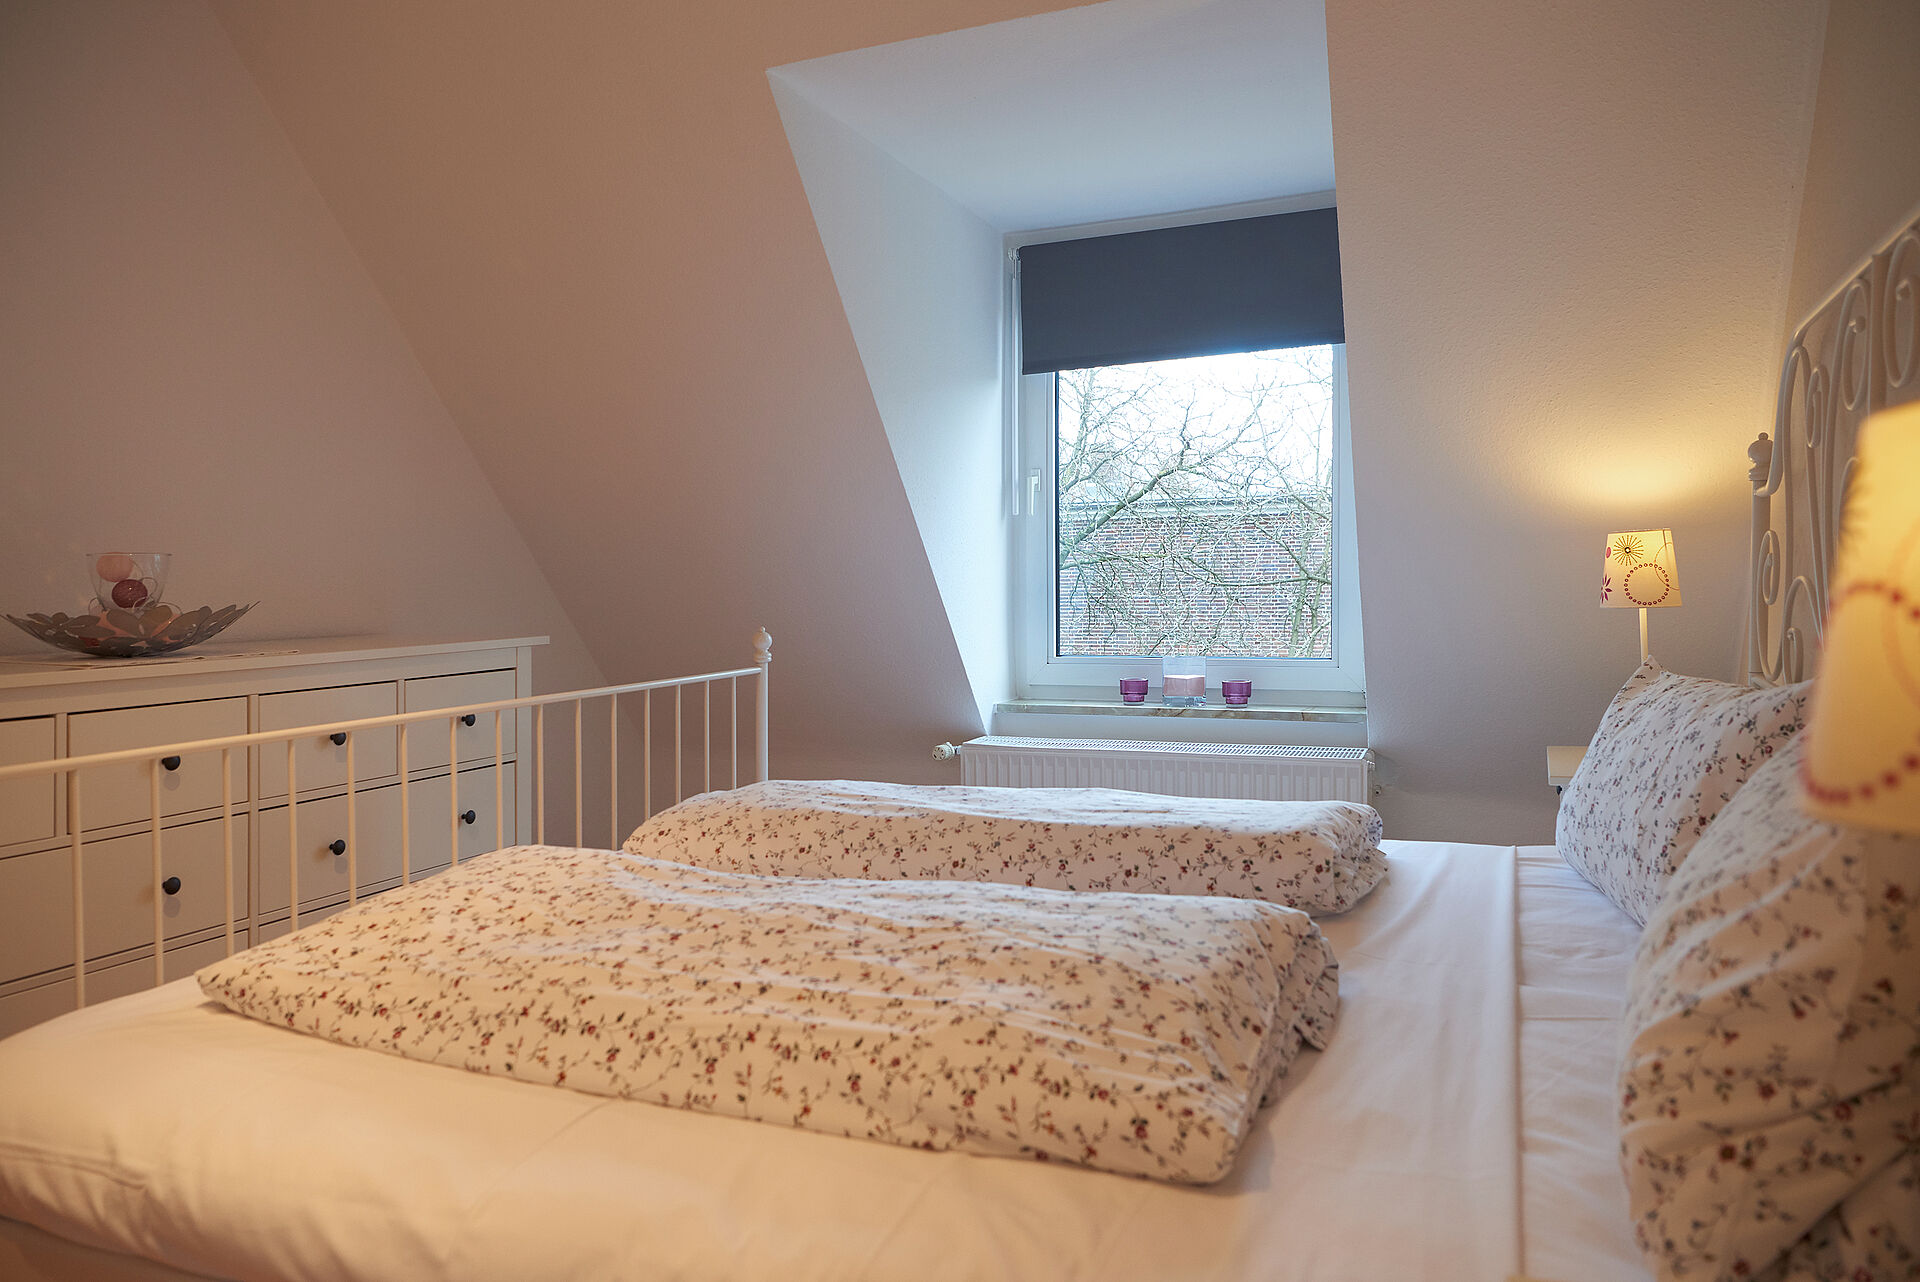 Blick über ein frisch bezogenes Bett auf eine Kommode und das Schlafzimmerfenster